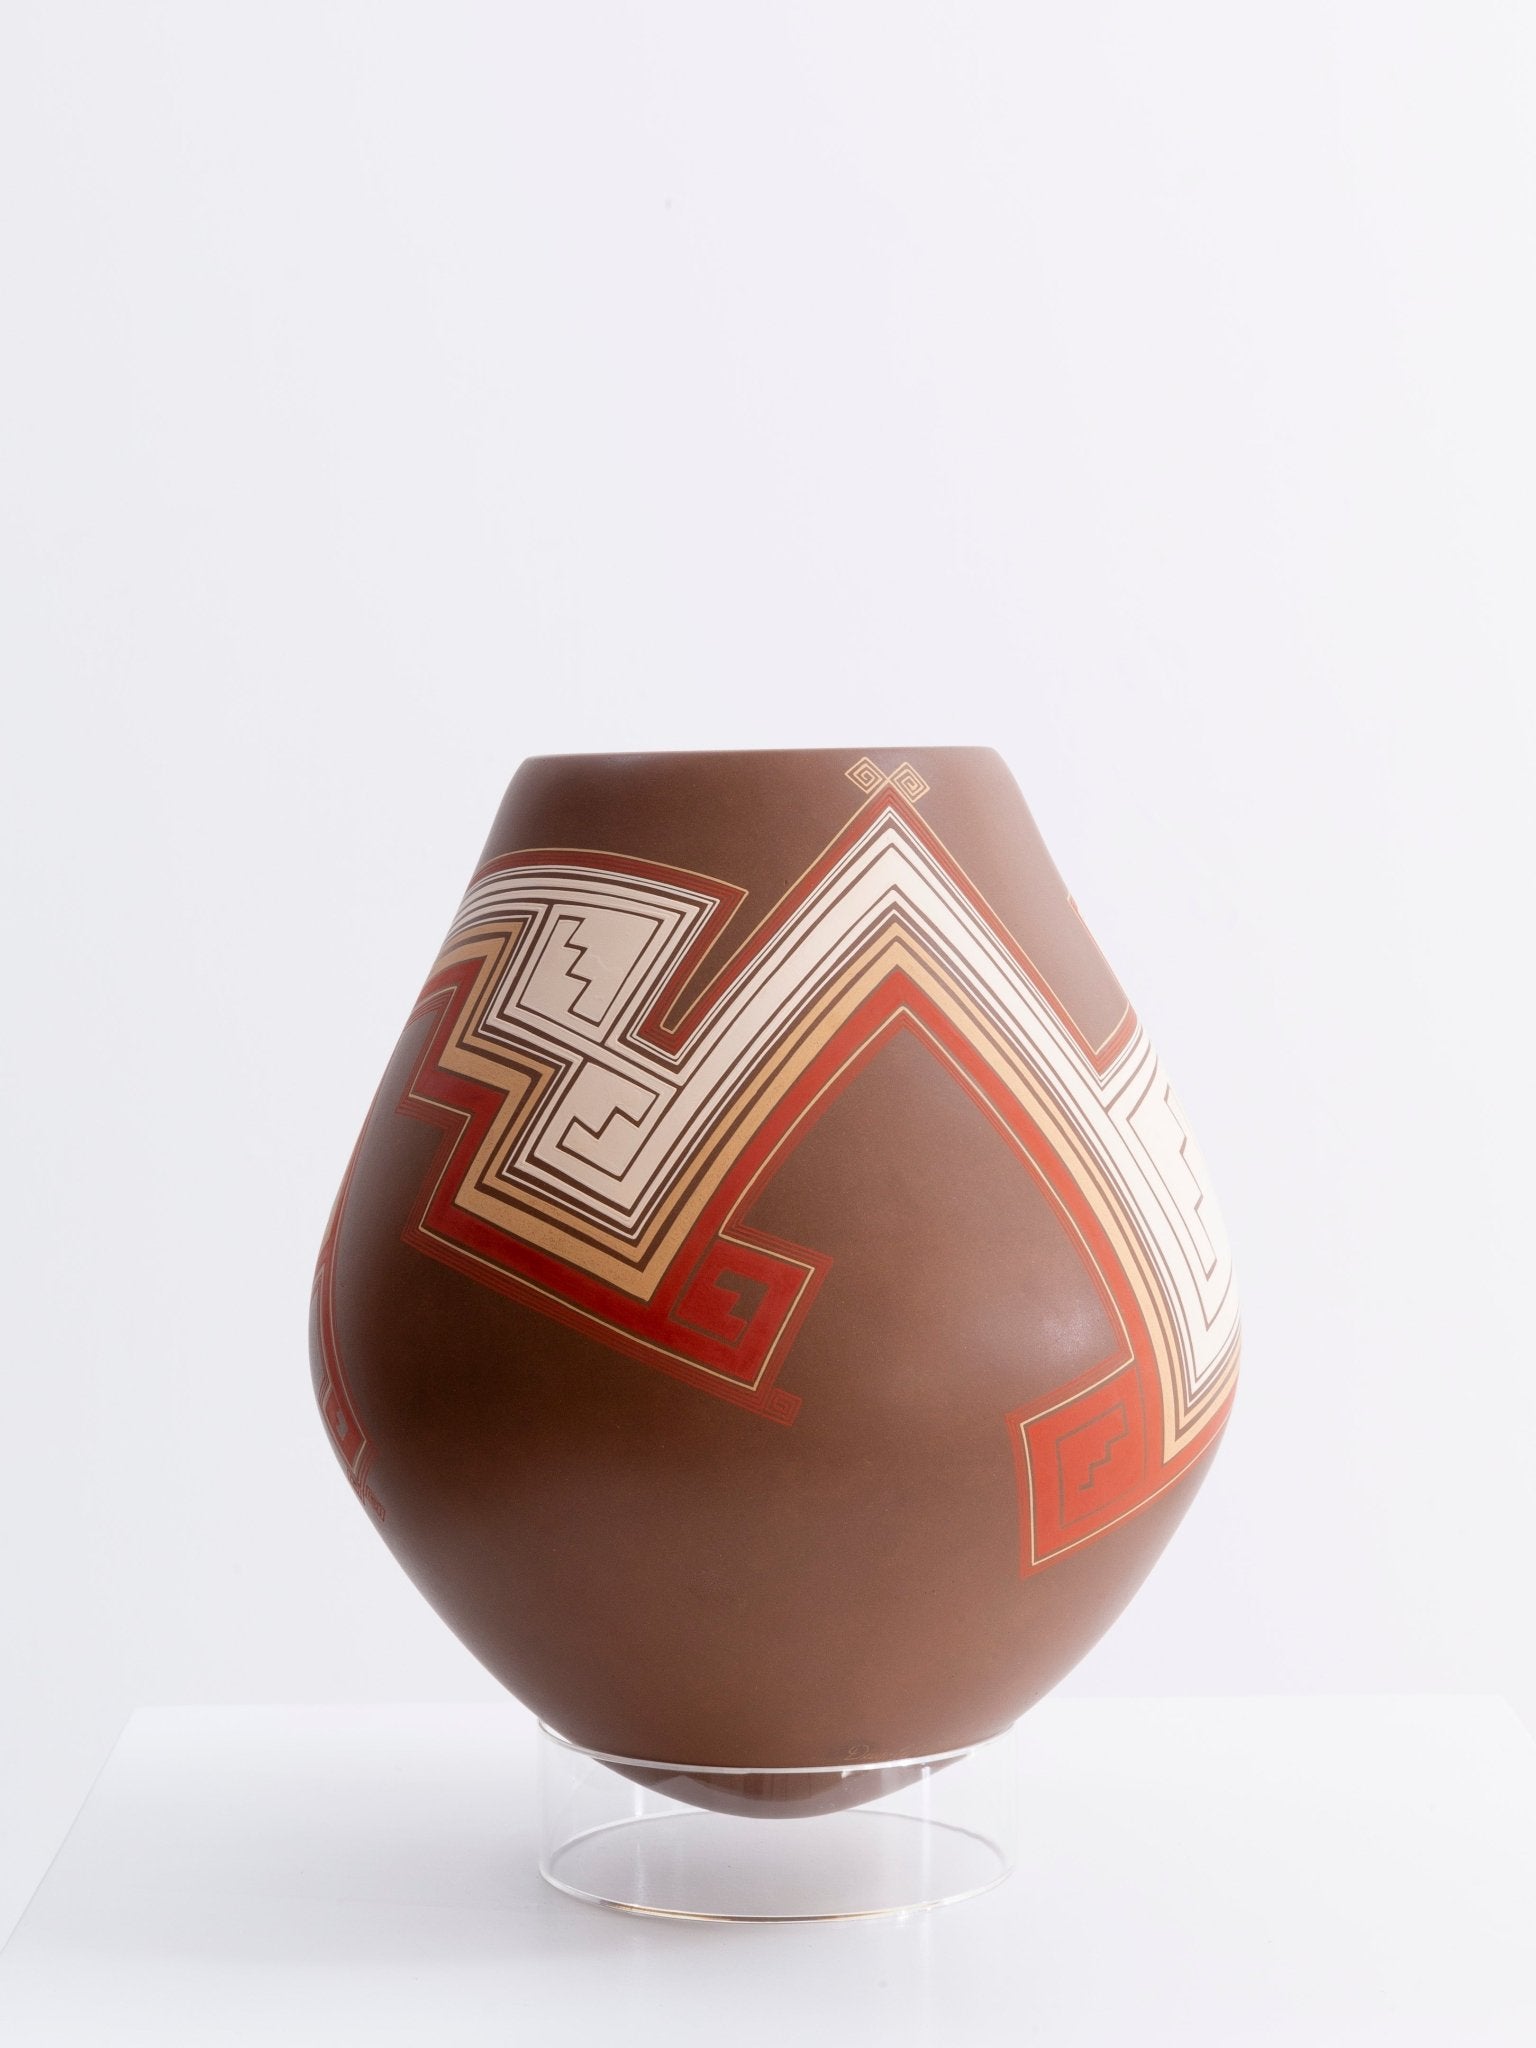 Mata Ortiz Keramik – Sackgasse – Huichol-Kunst – Marakame